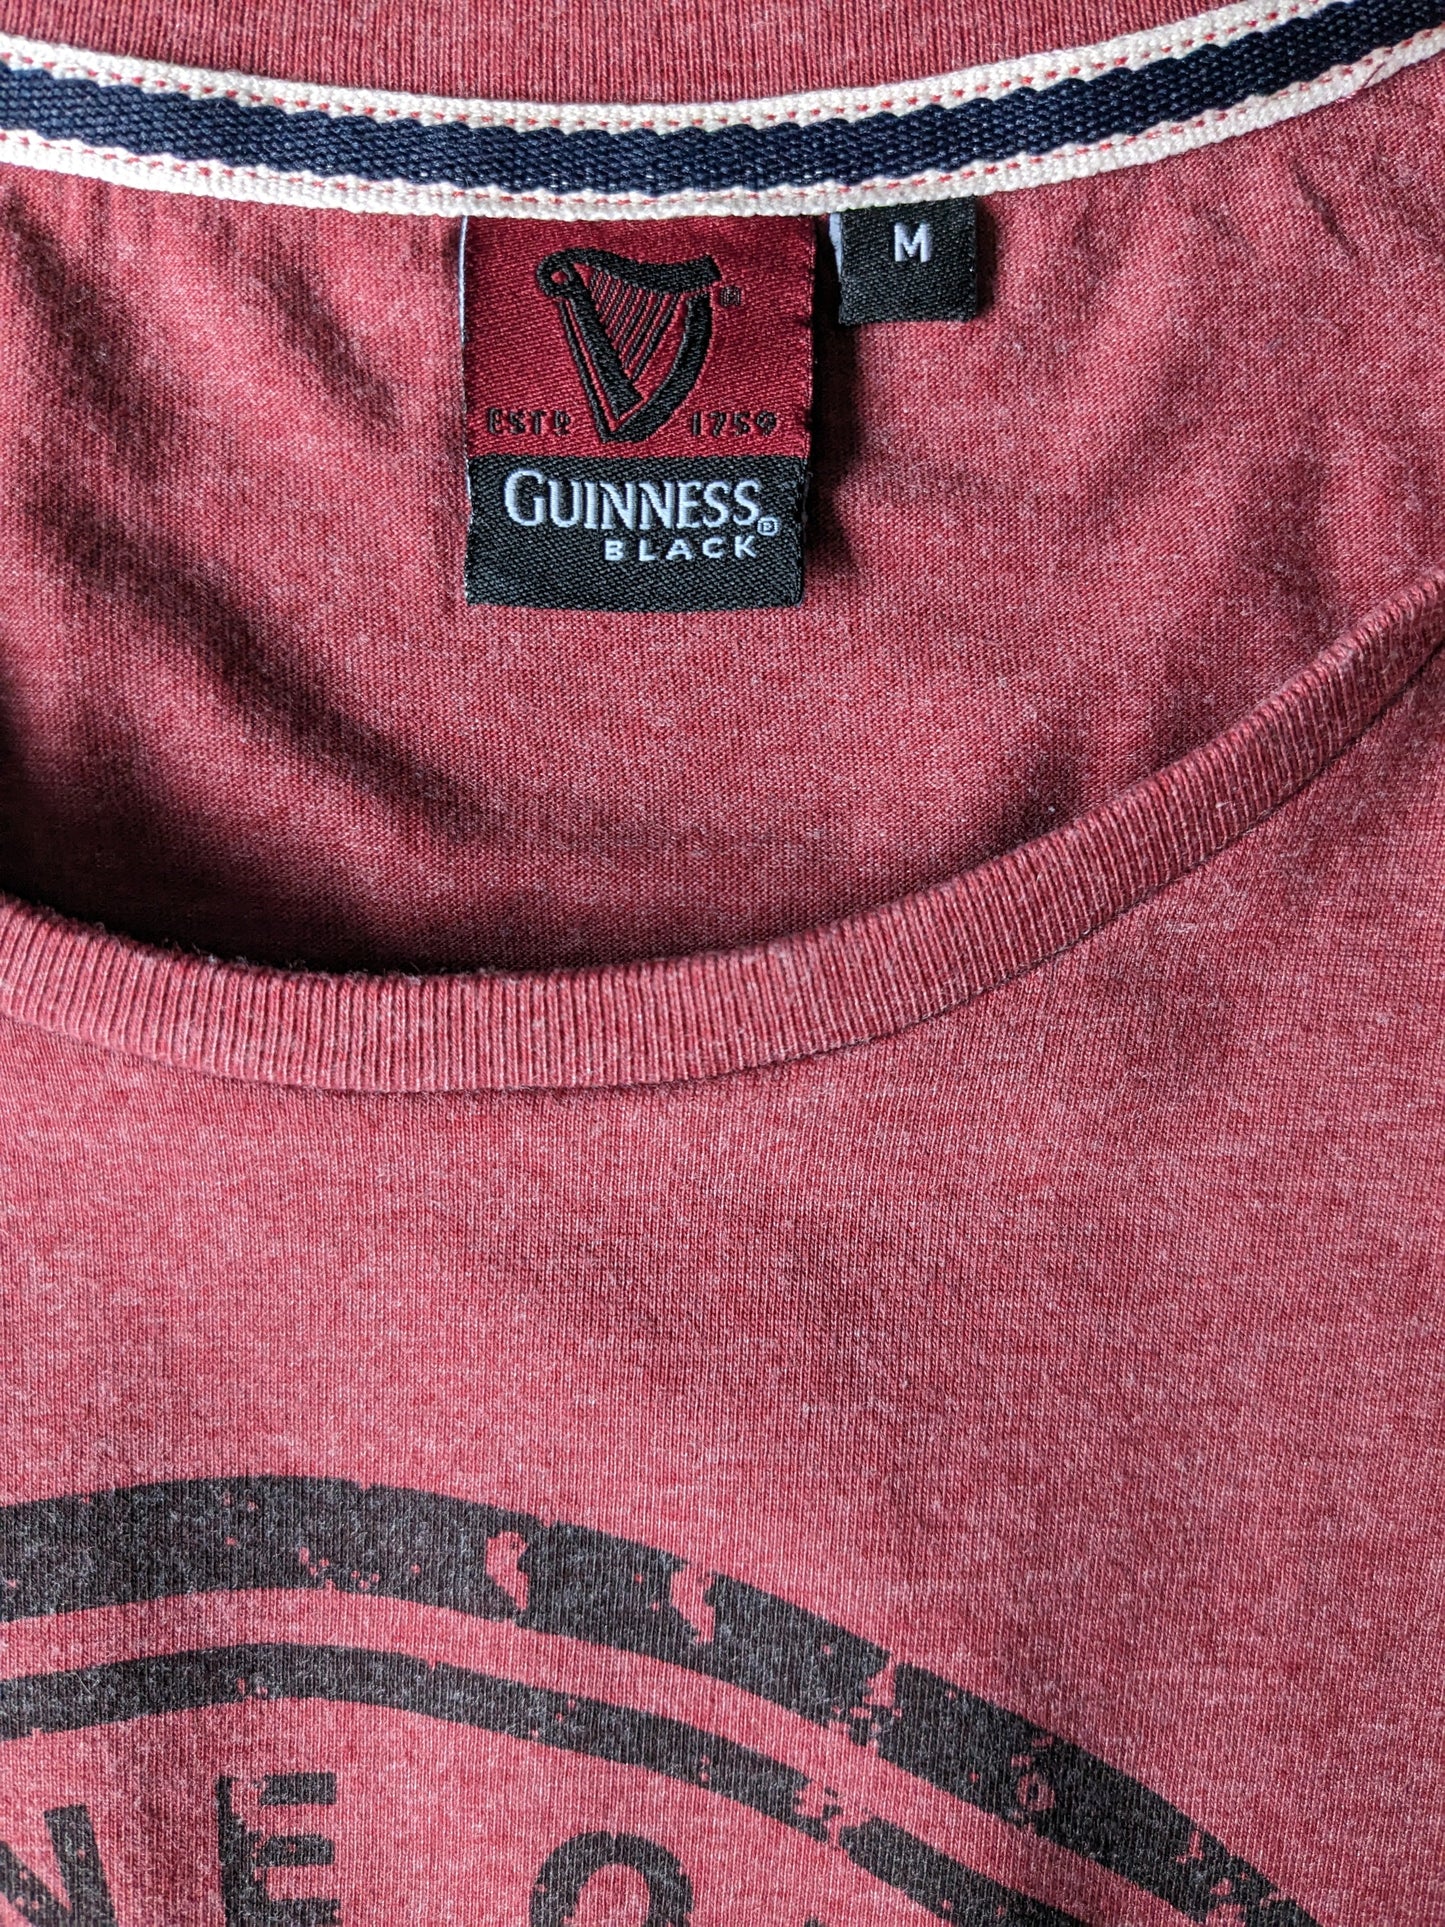 Guinness shirt. Rood gemêleerd met opdruk. Maat M.